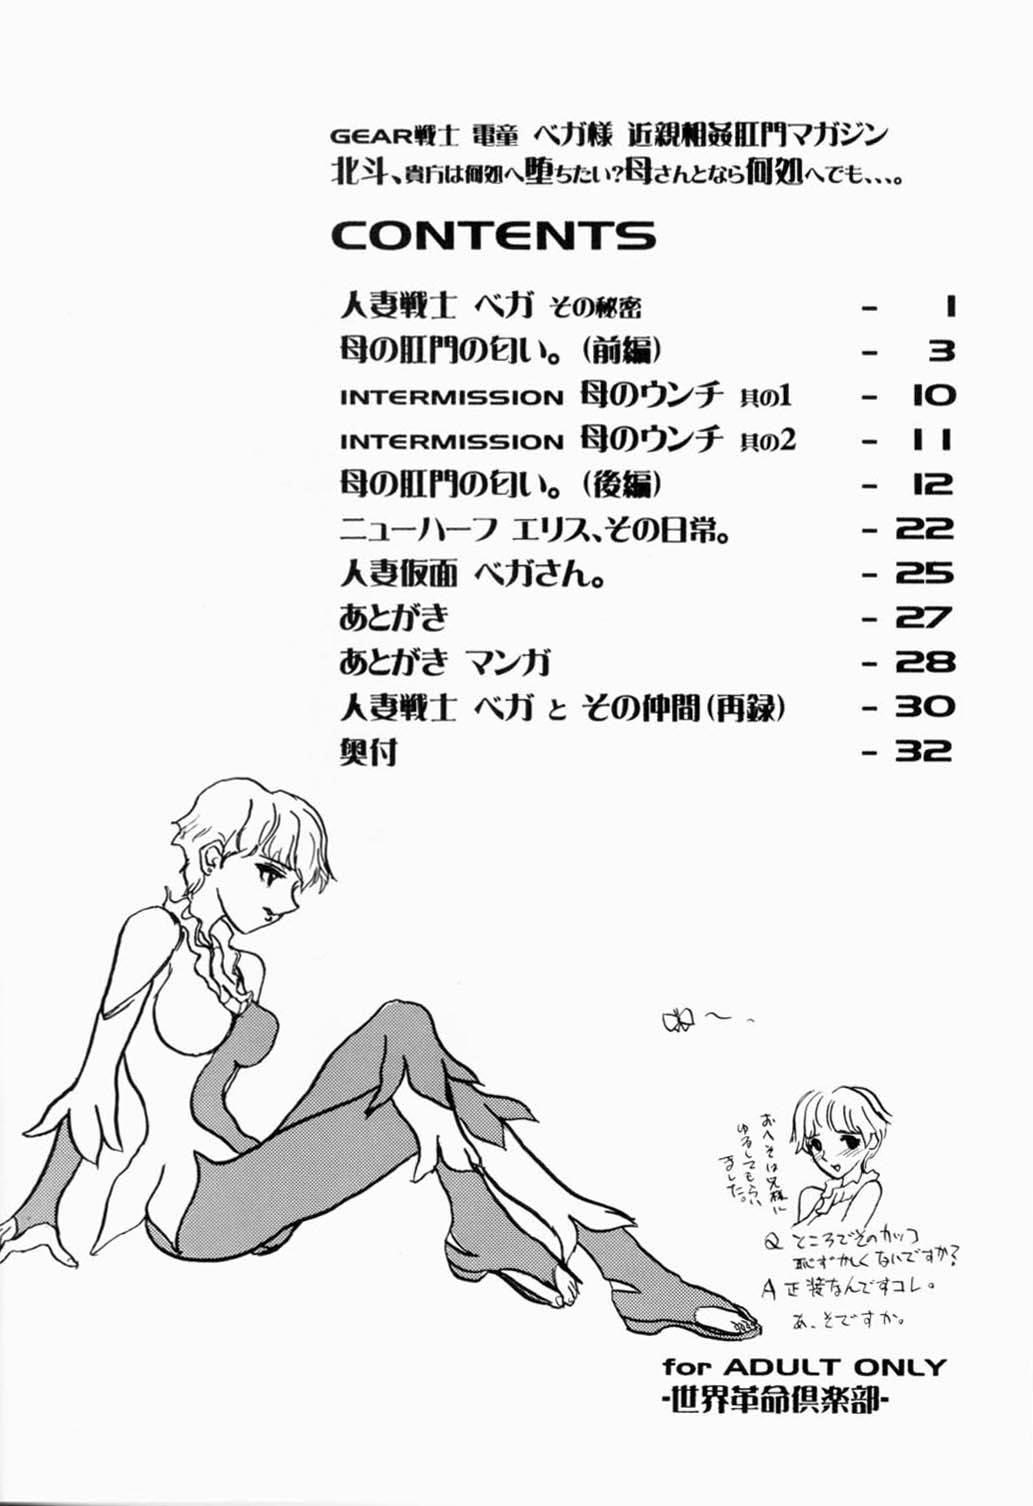 Branquinha Hokuto, Anata wa Doko he Ochitai? Kaasan to Nara Doko he Demo.... - Gear fighter dendoh Fantasy Massage - Page 3